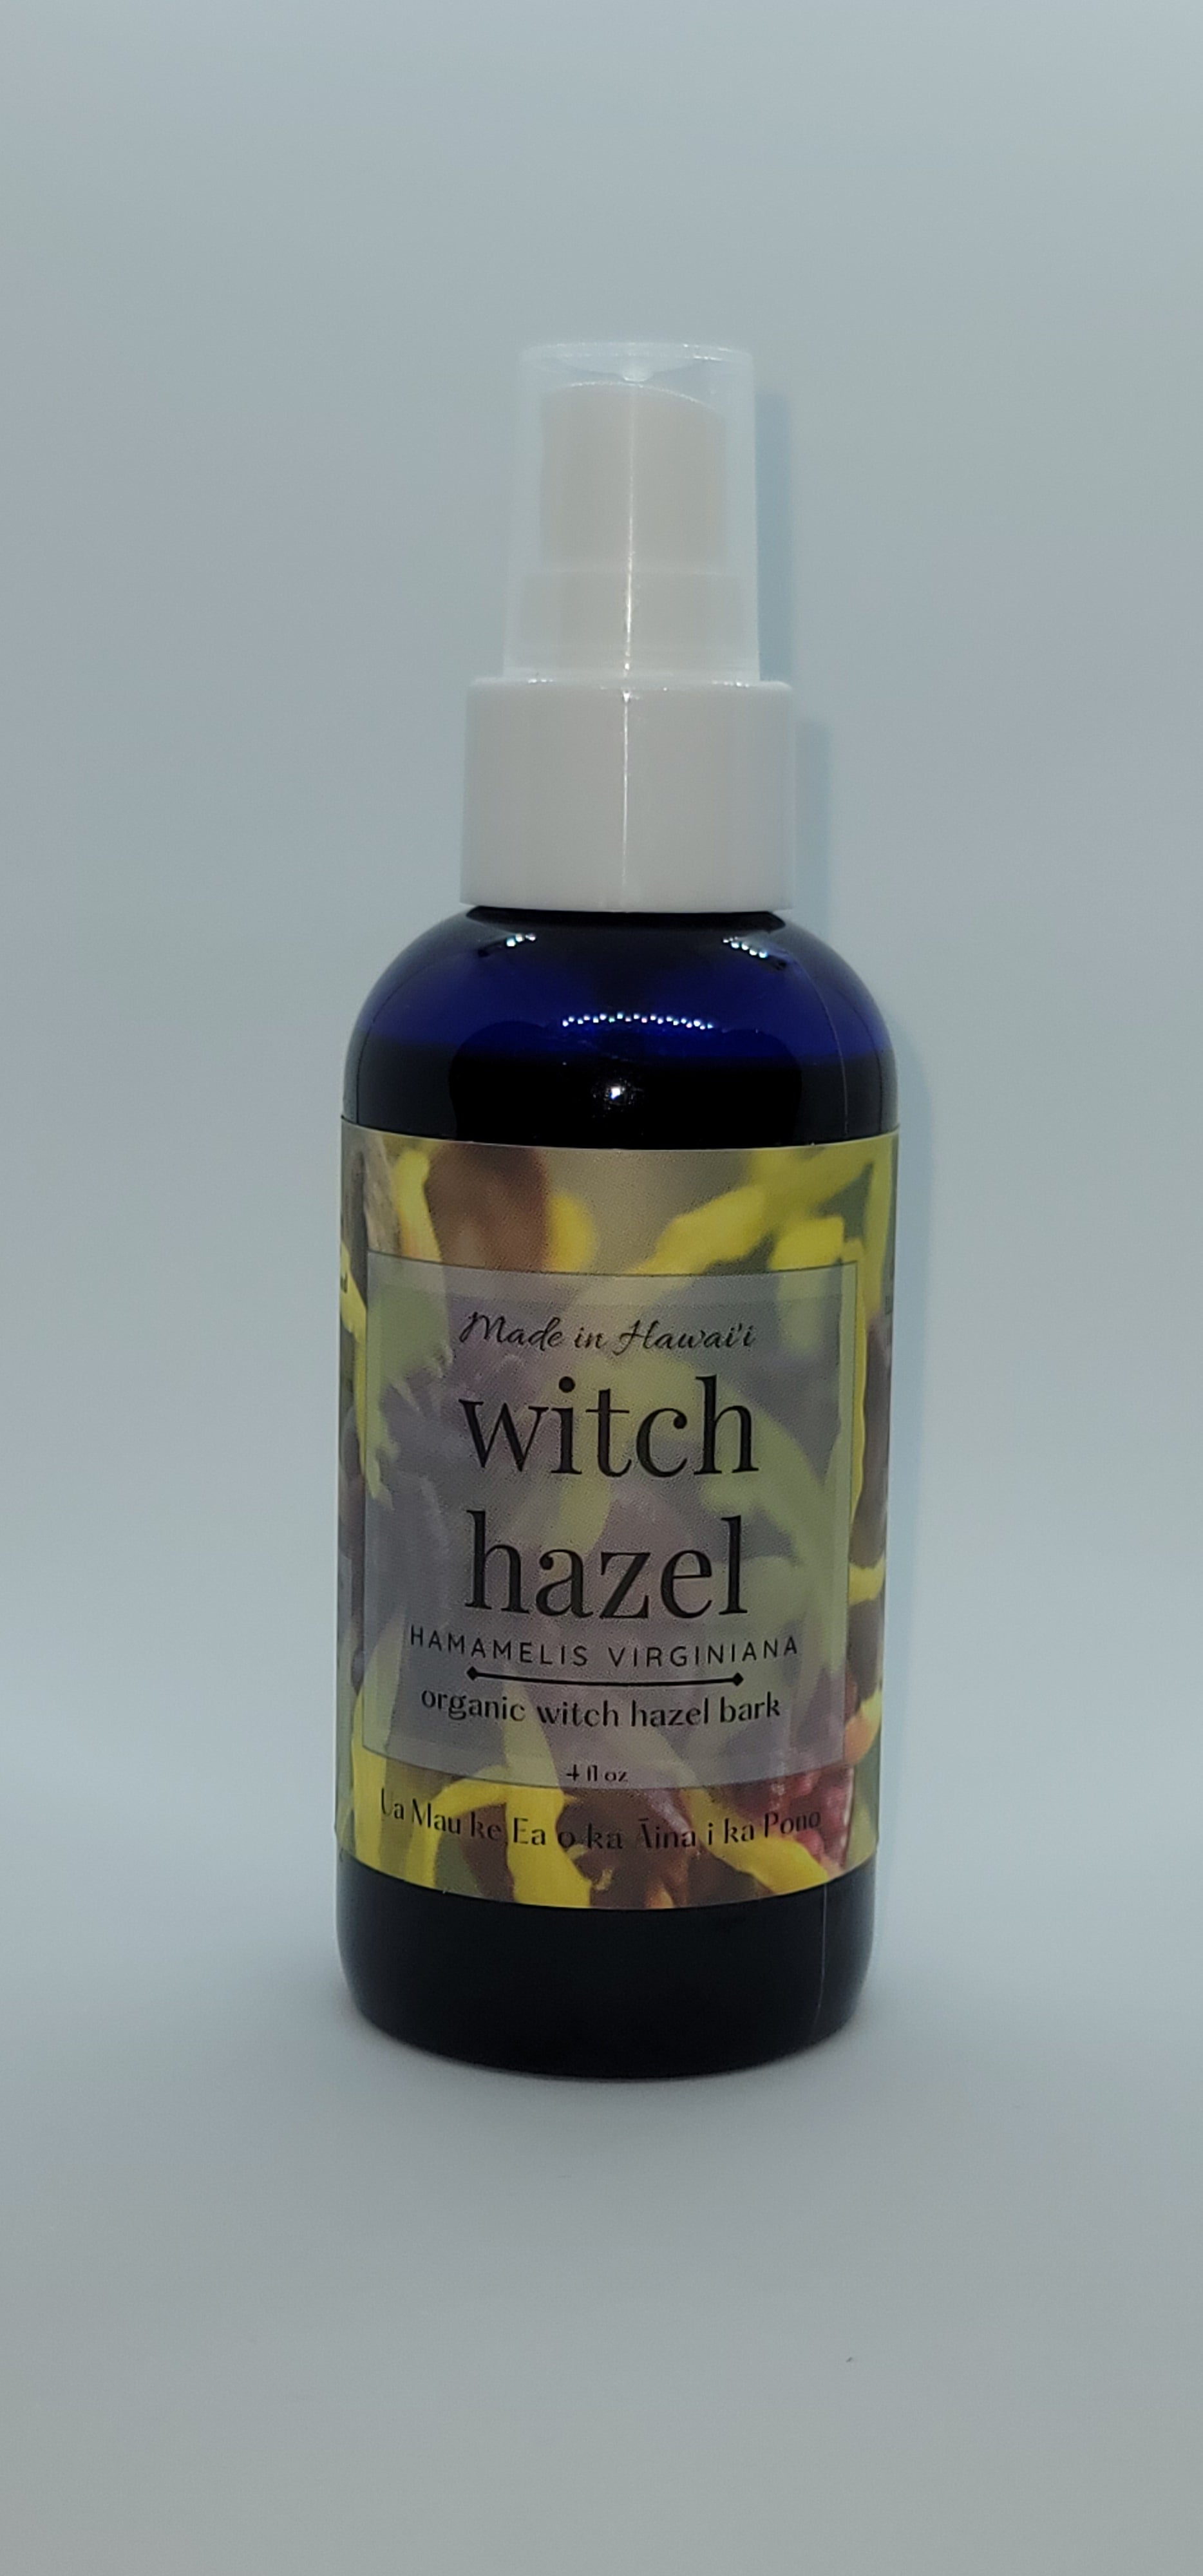 Witch Hazel/ 'ili la'au